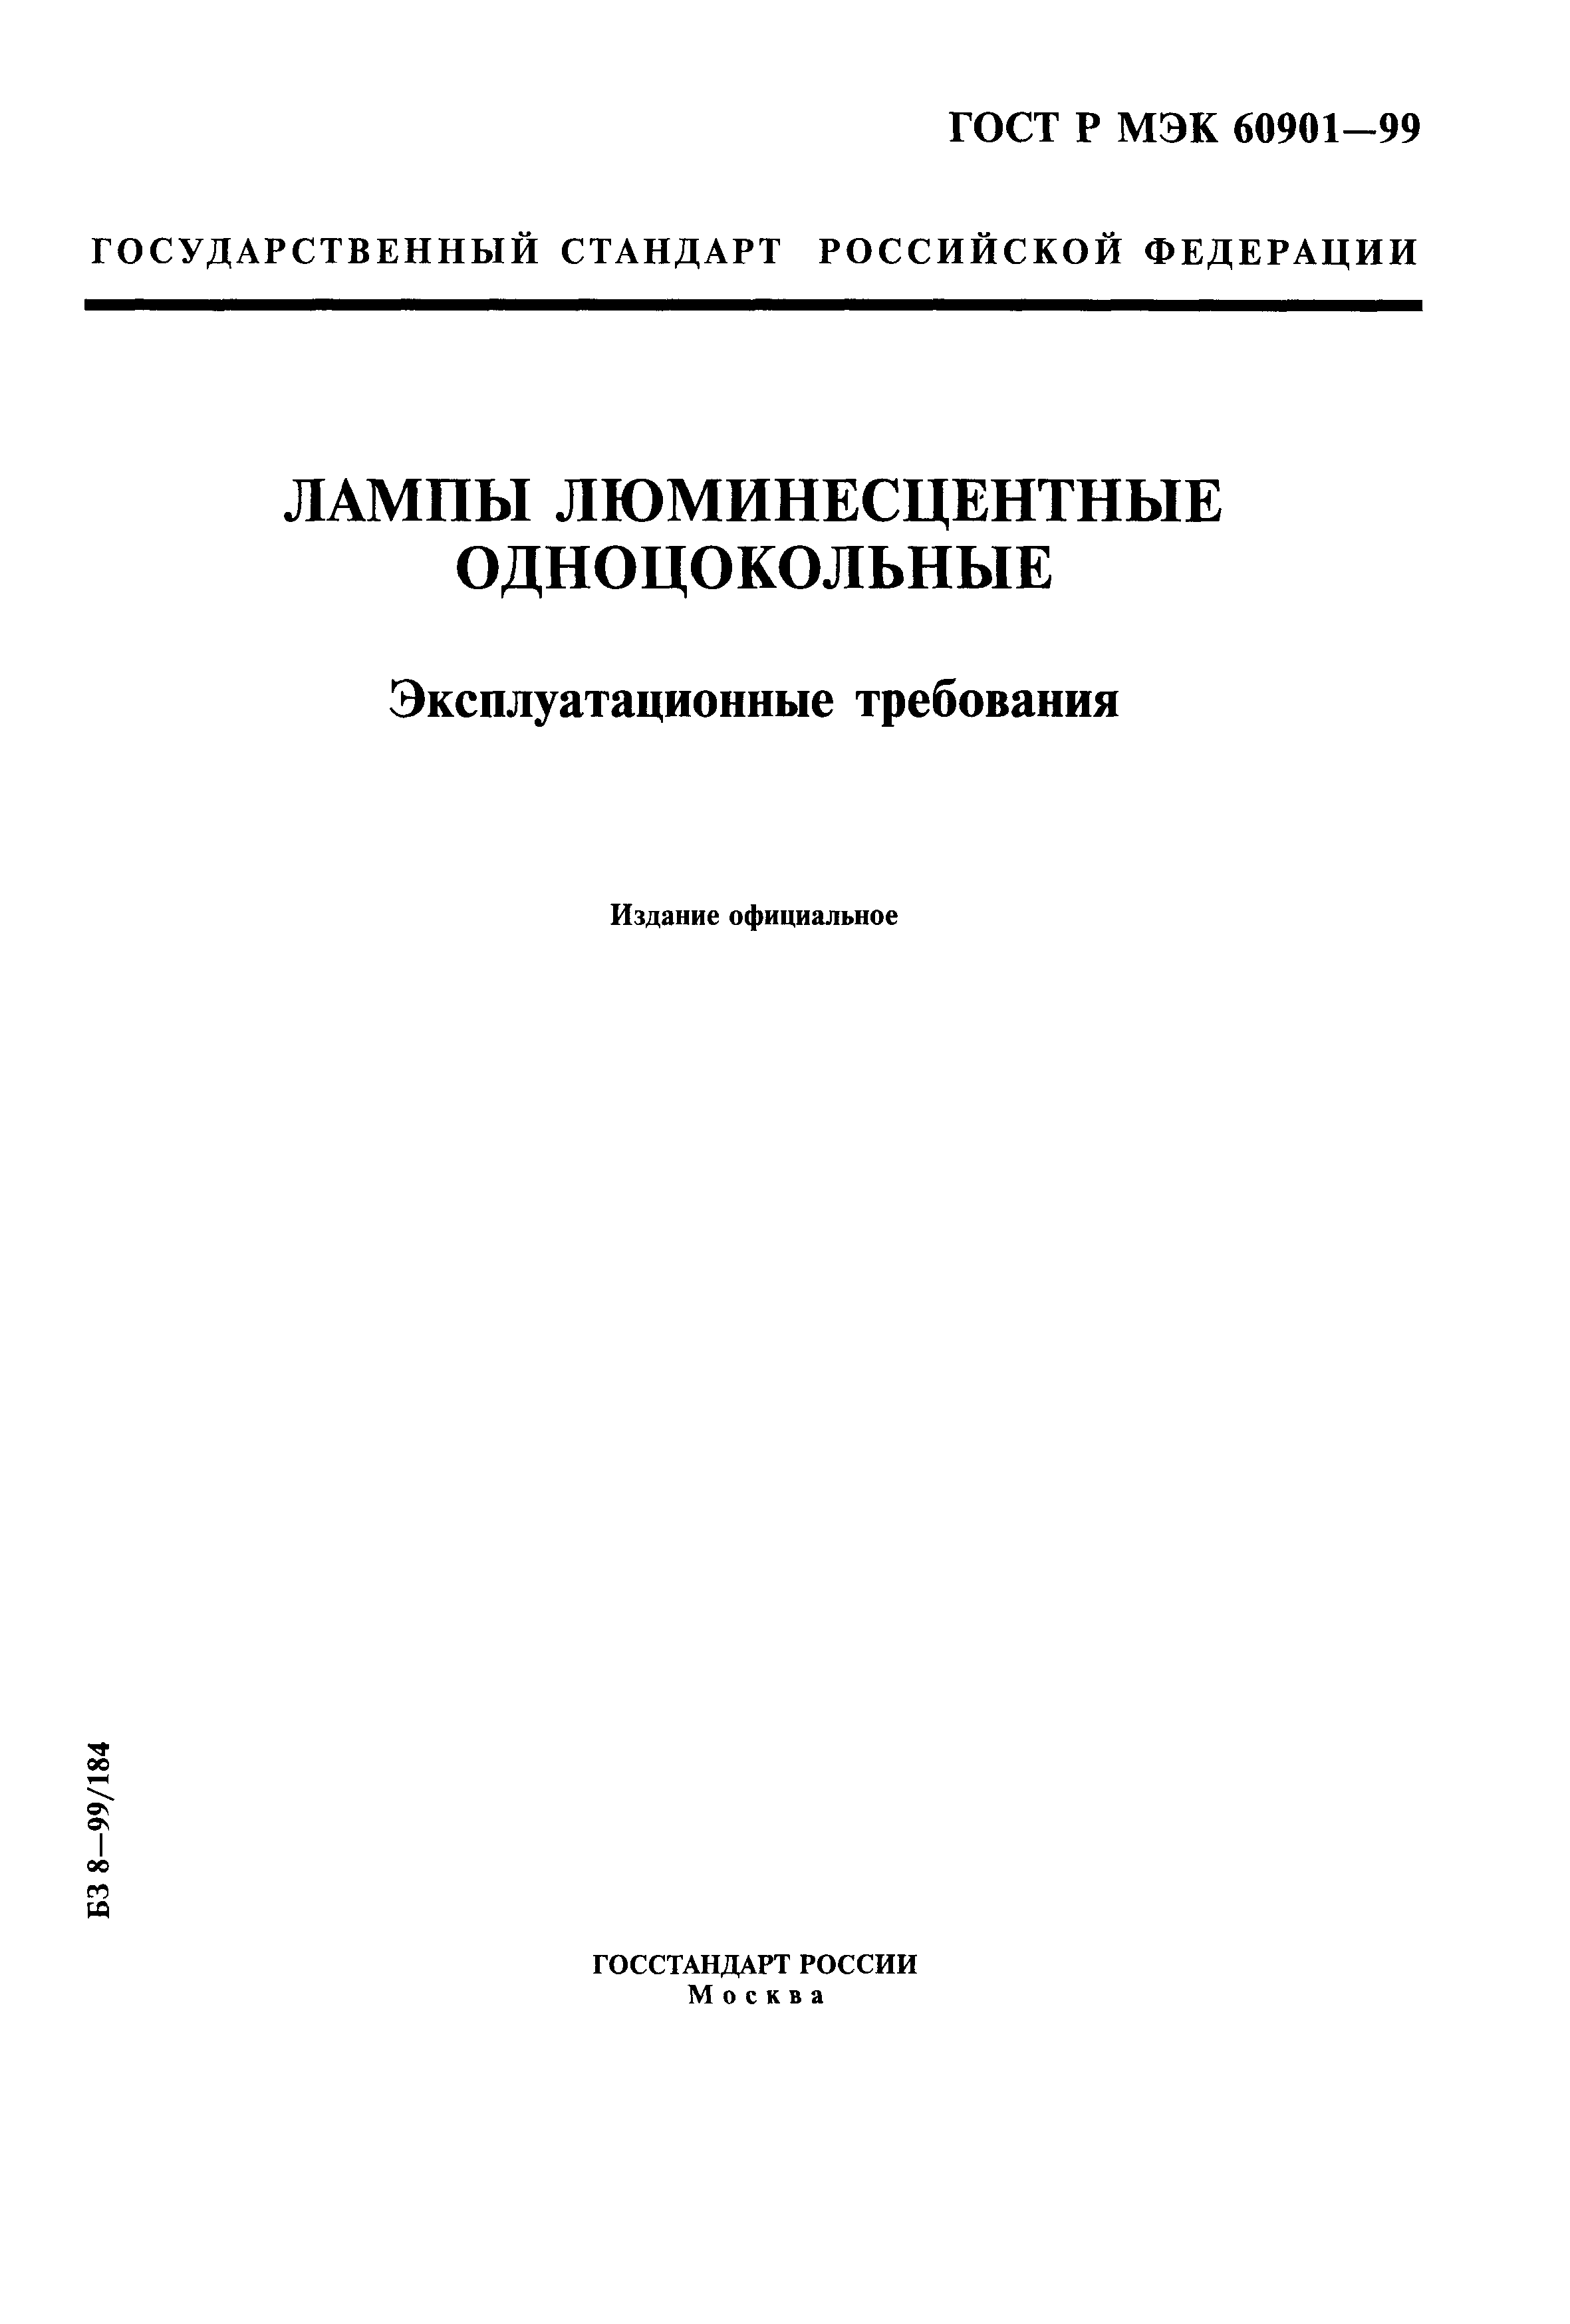 ГОСТ Р МЭК 60901-99